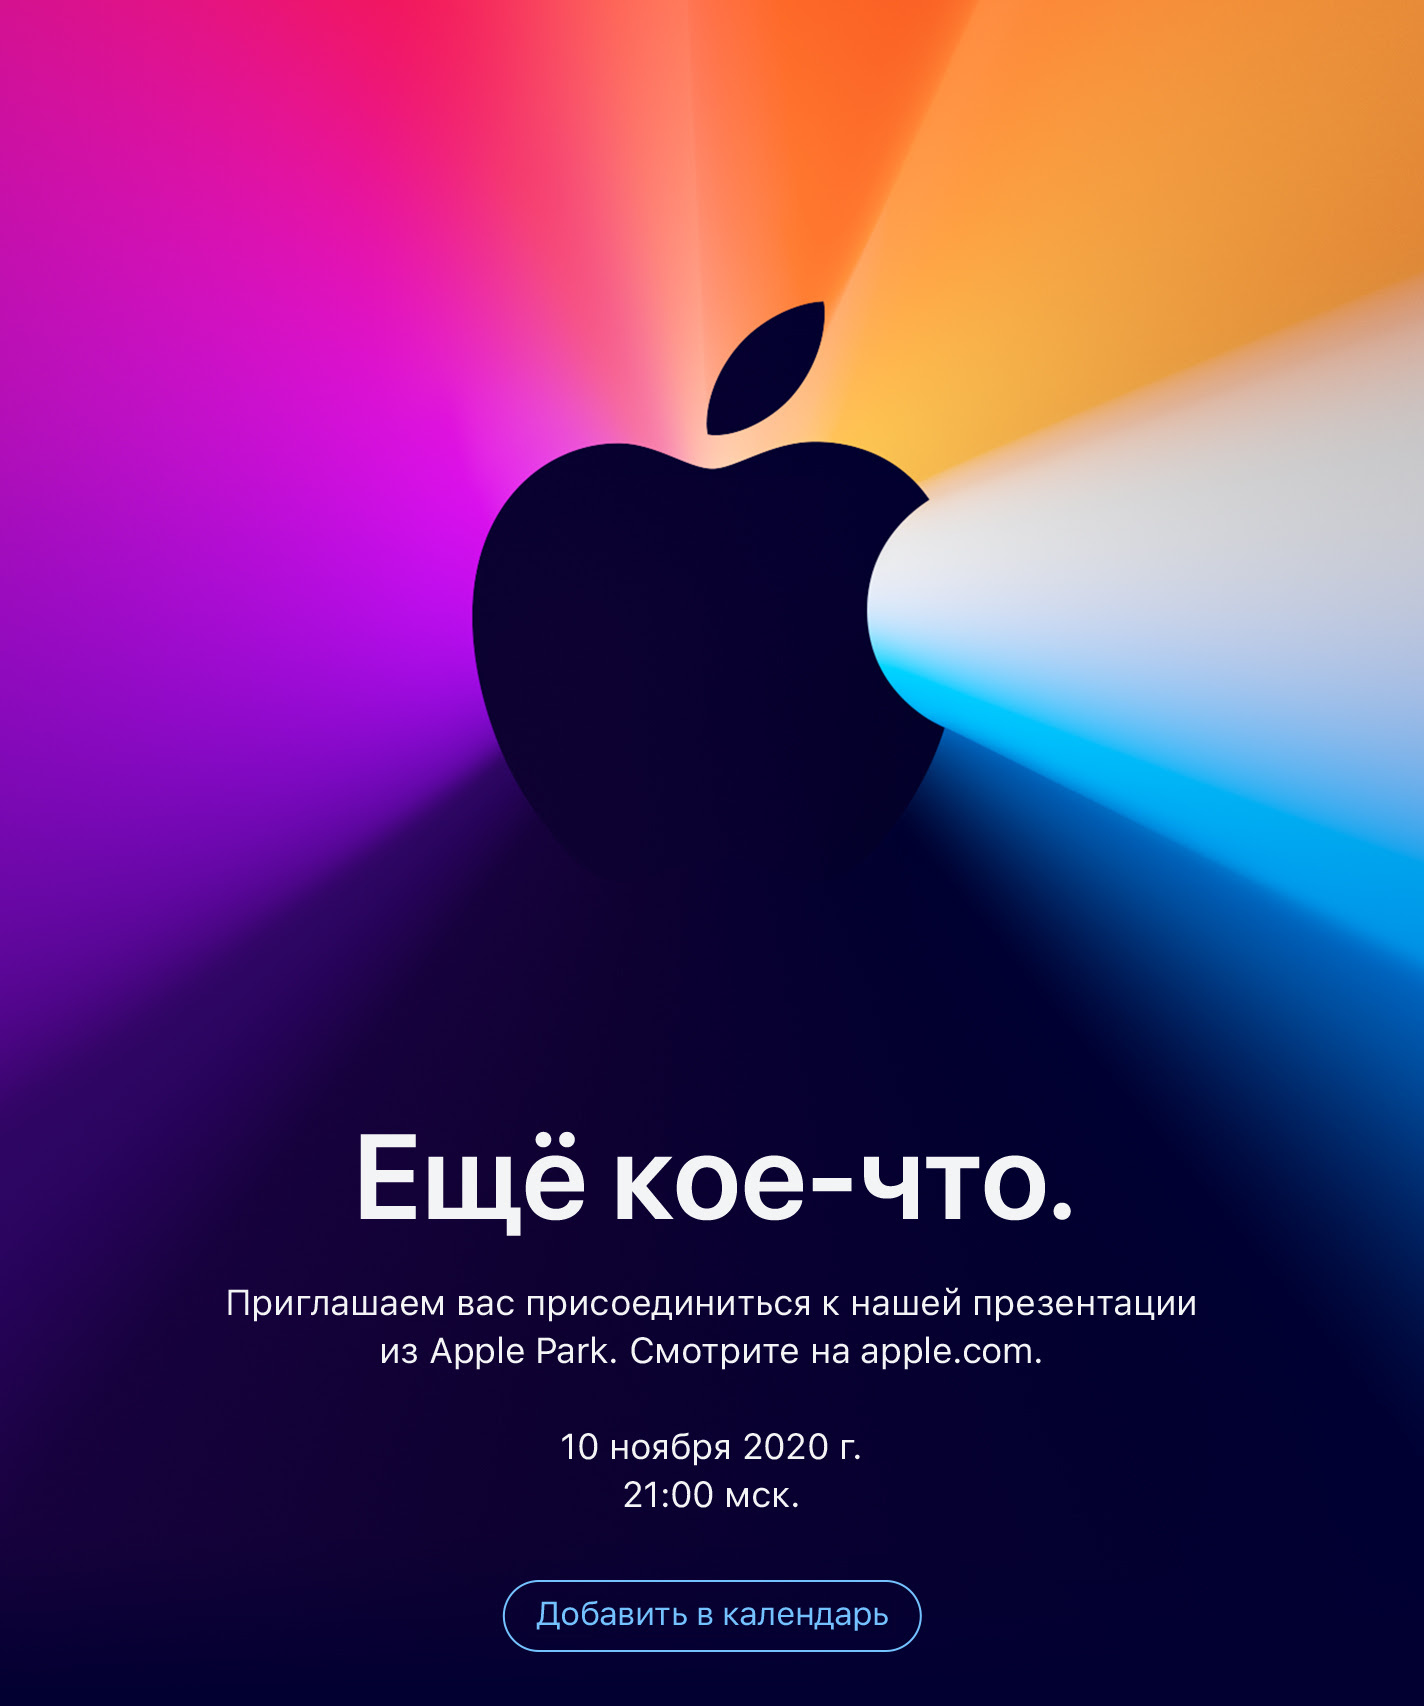 Названа дата третьей осенней презентации Apple. Что покажут?